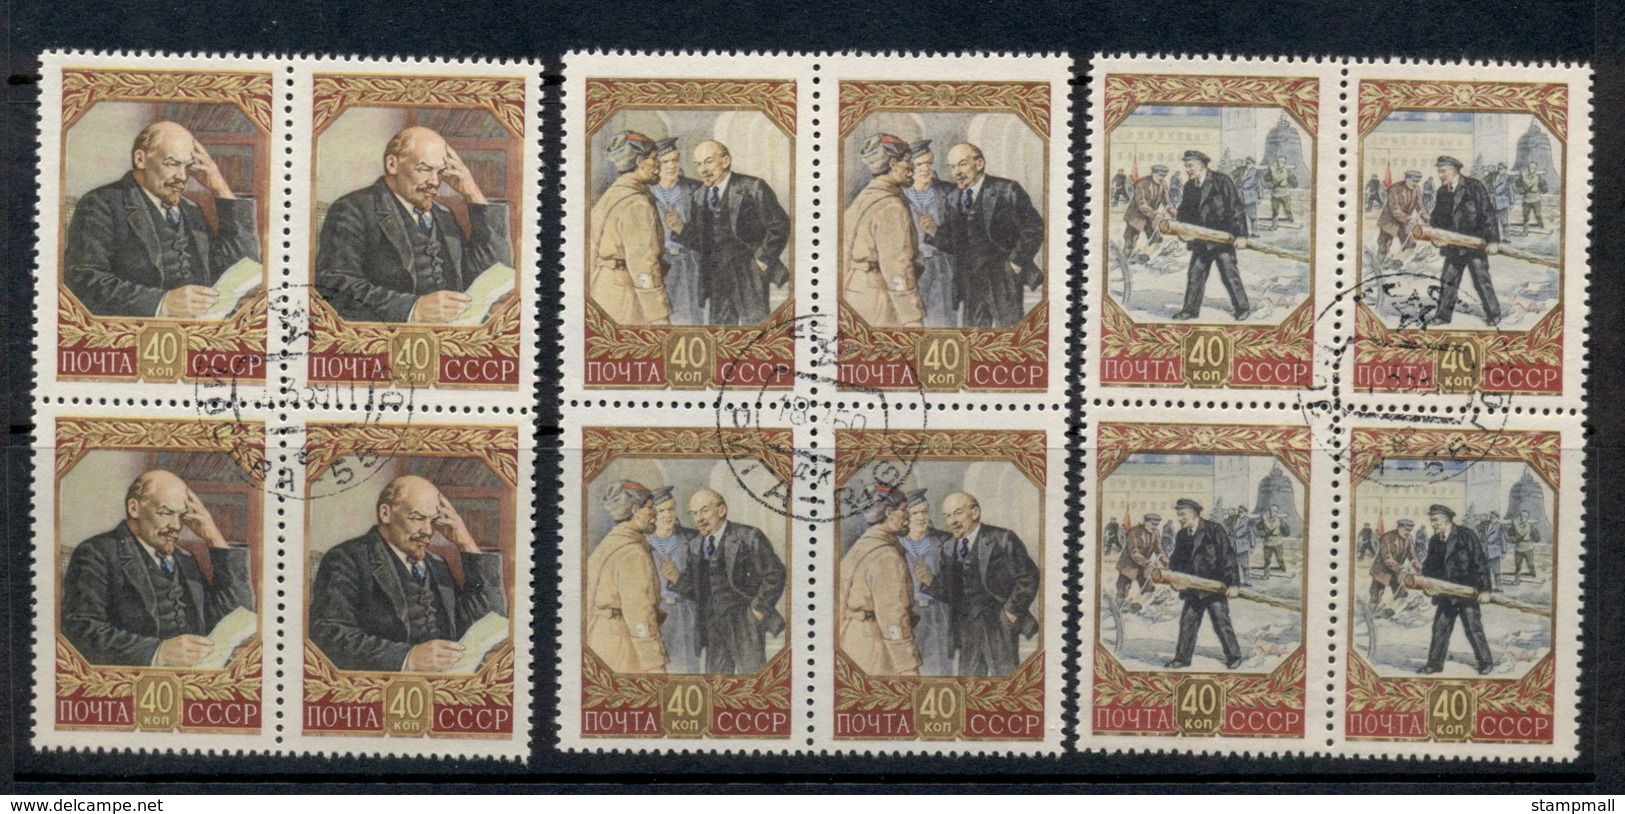 Russia 1957 Lenin 87th Birth Anniv. Blk4 CTO - Used Stamps